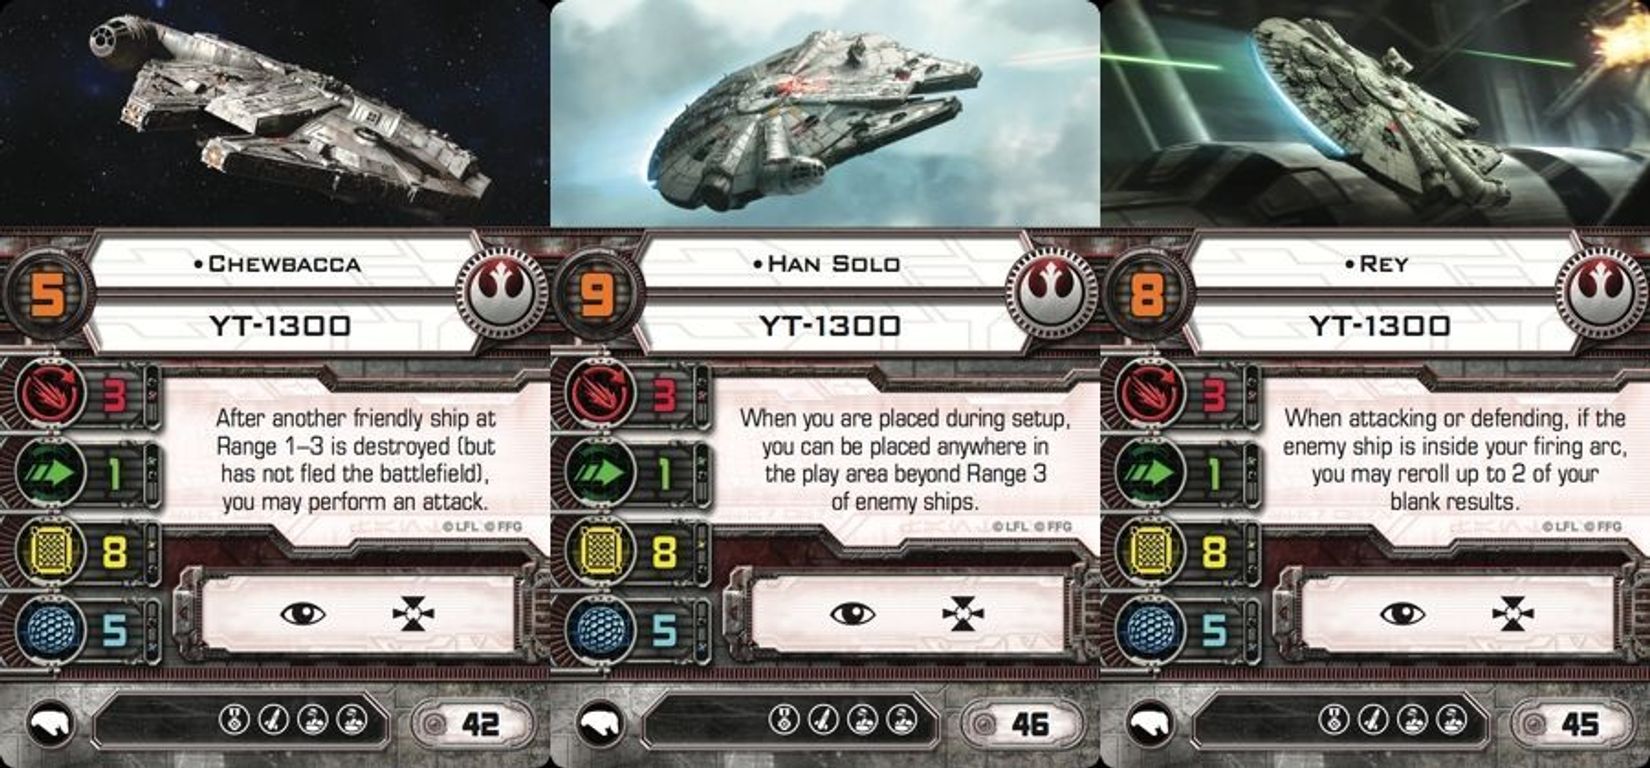 Star Wars X-Wing: El juego de miniaturas - Héroes de la Resistencia - Pack de Expansión cartas